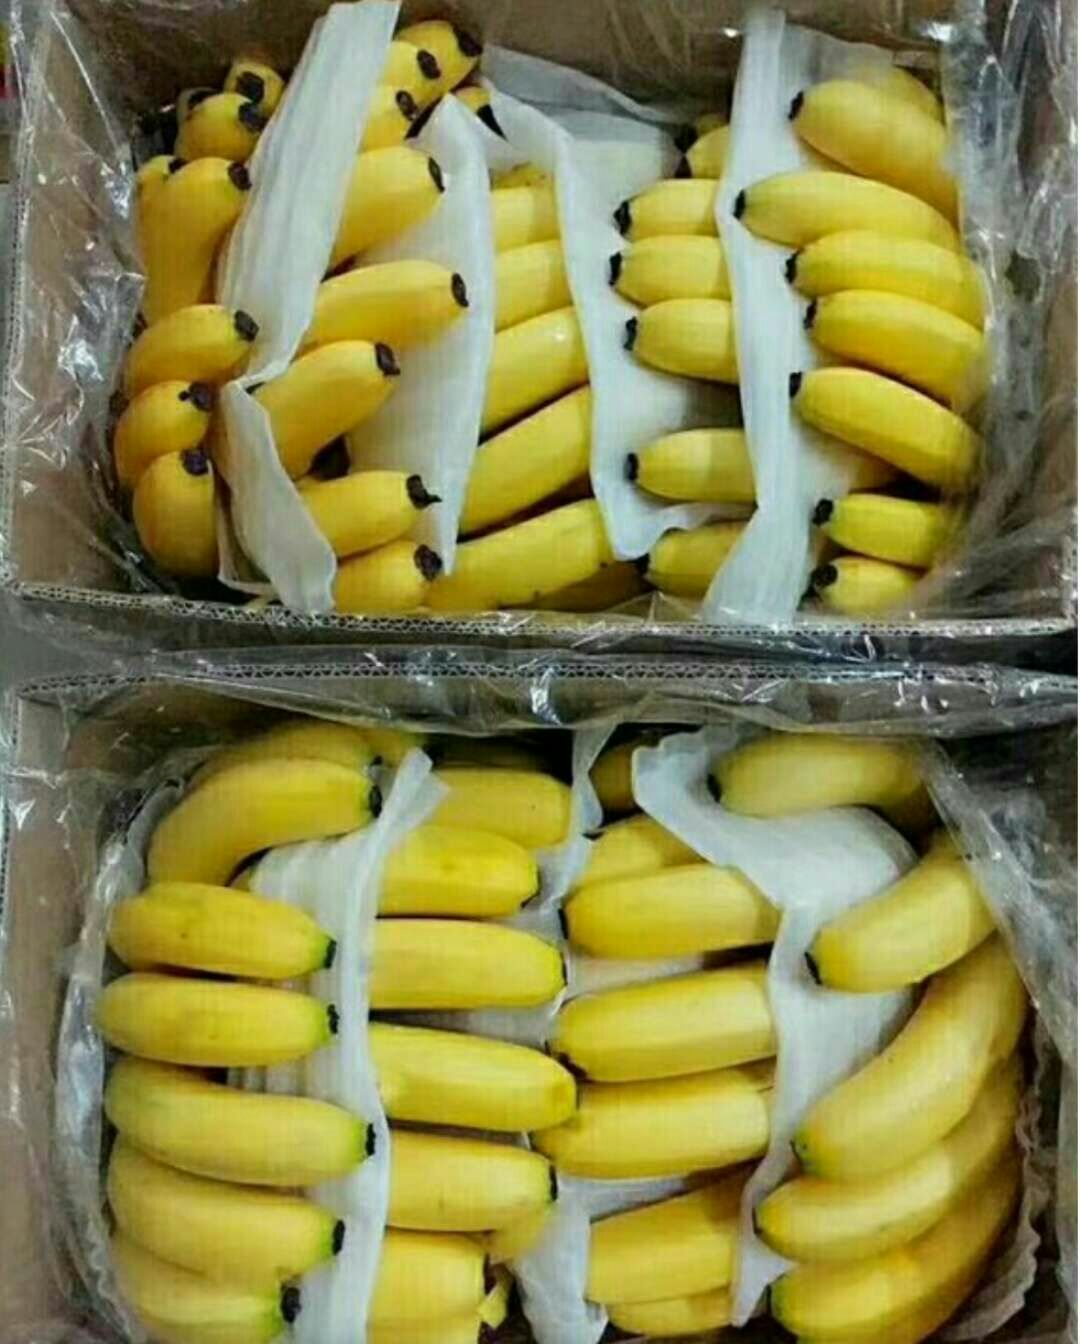 [威廉斯香蕉批发] 云南威尼斯香蕉价格299元/箱 